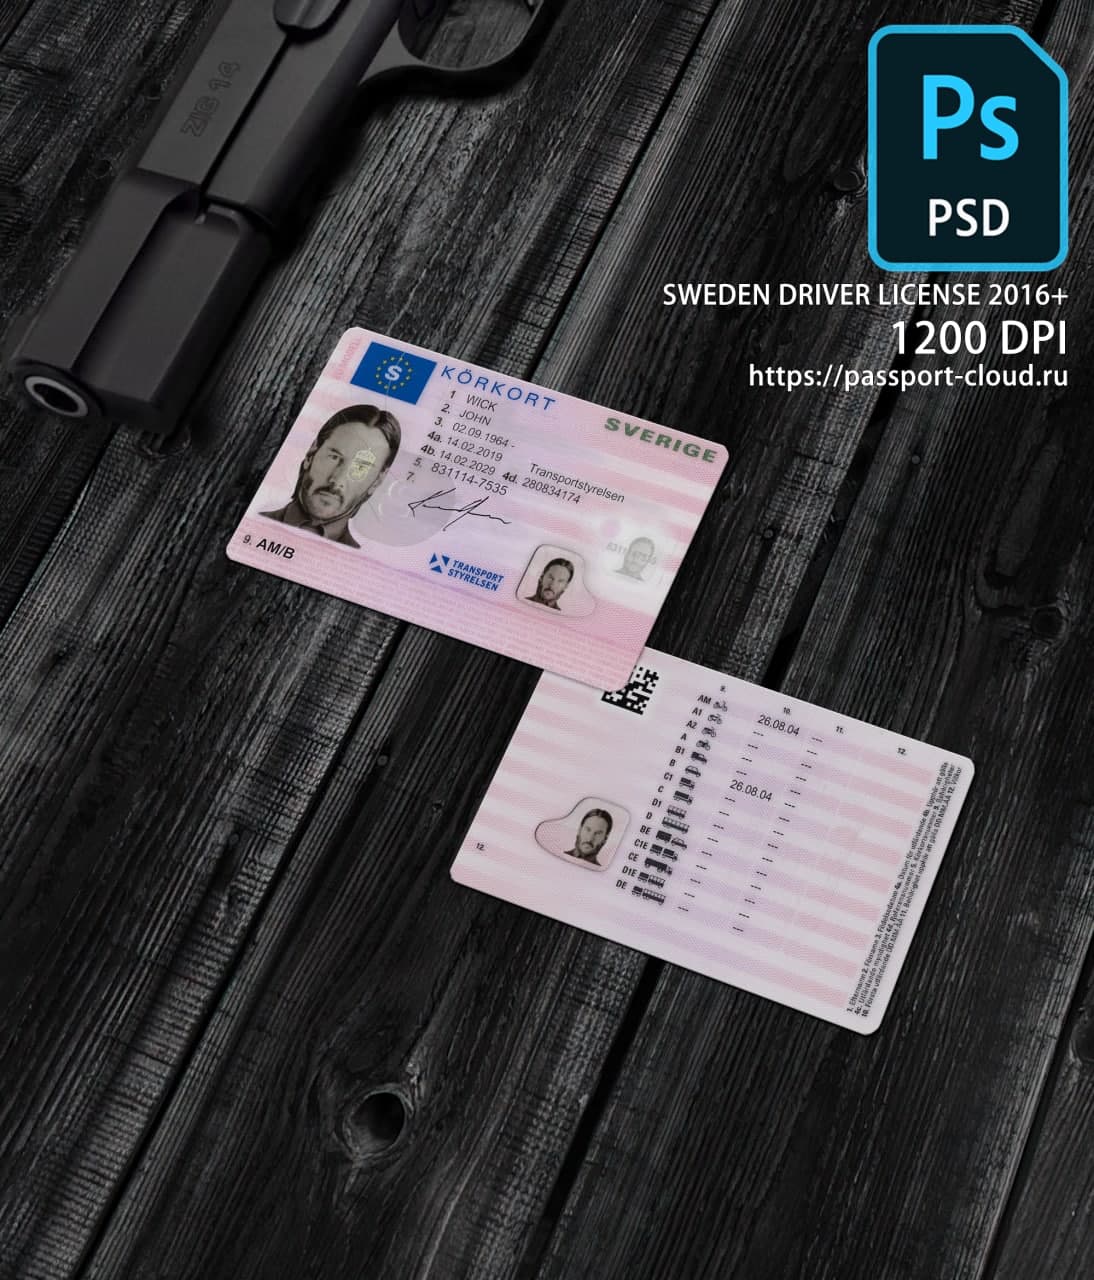 Sweden Driver License 2016+1